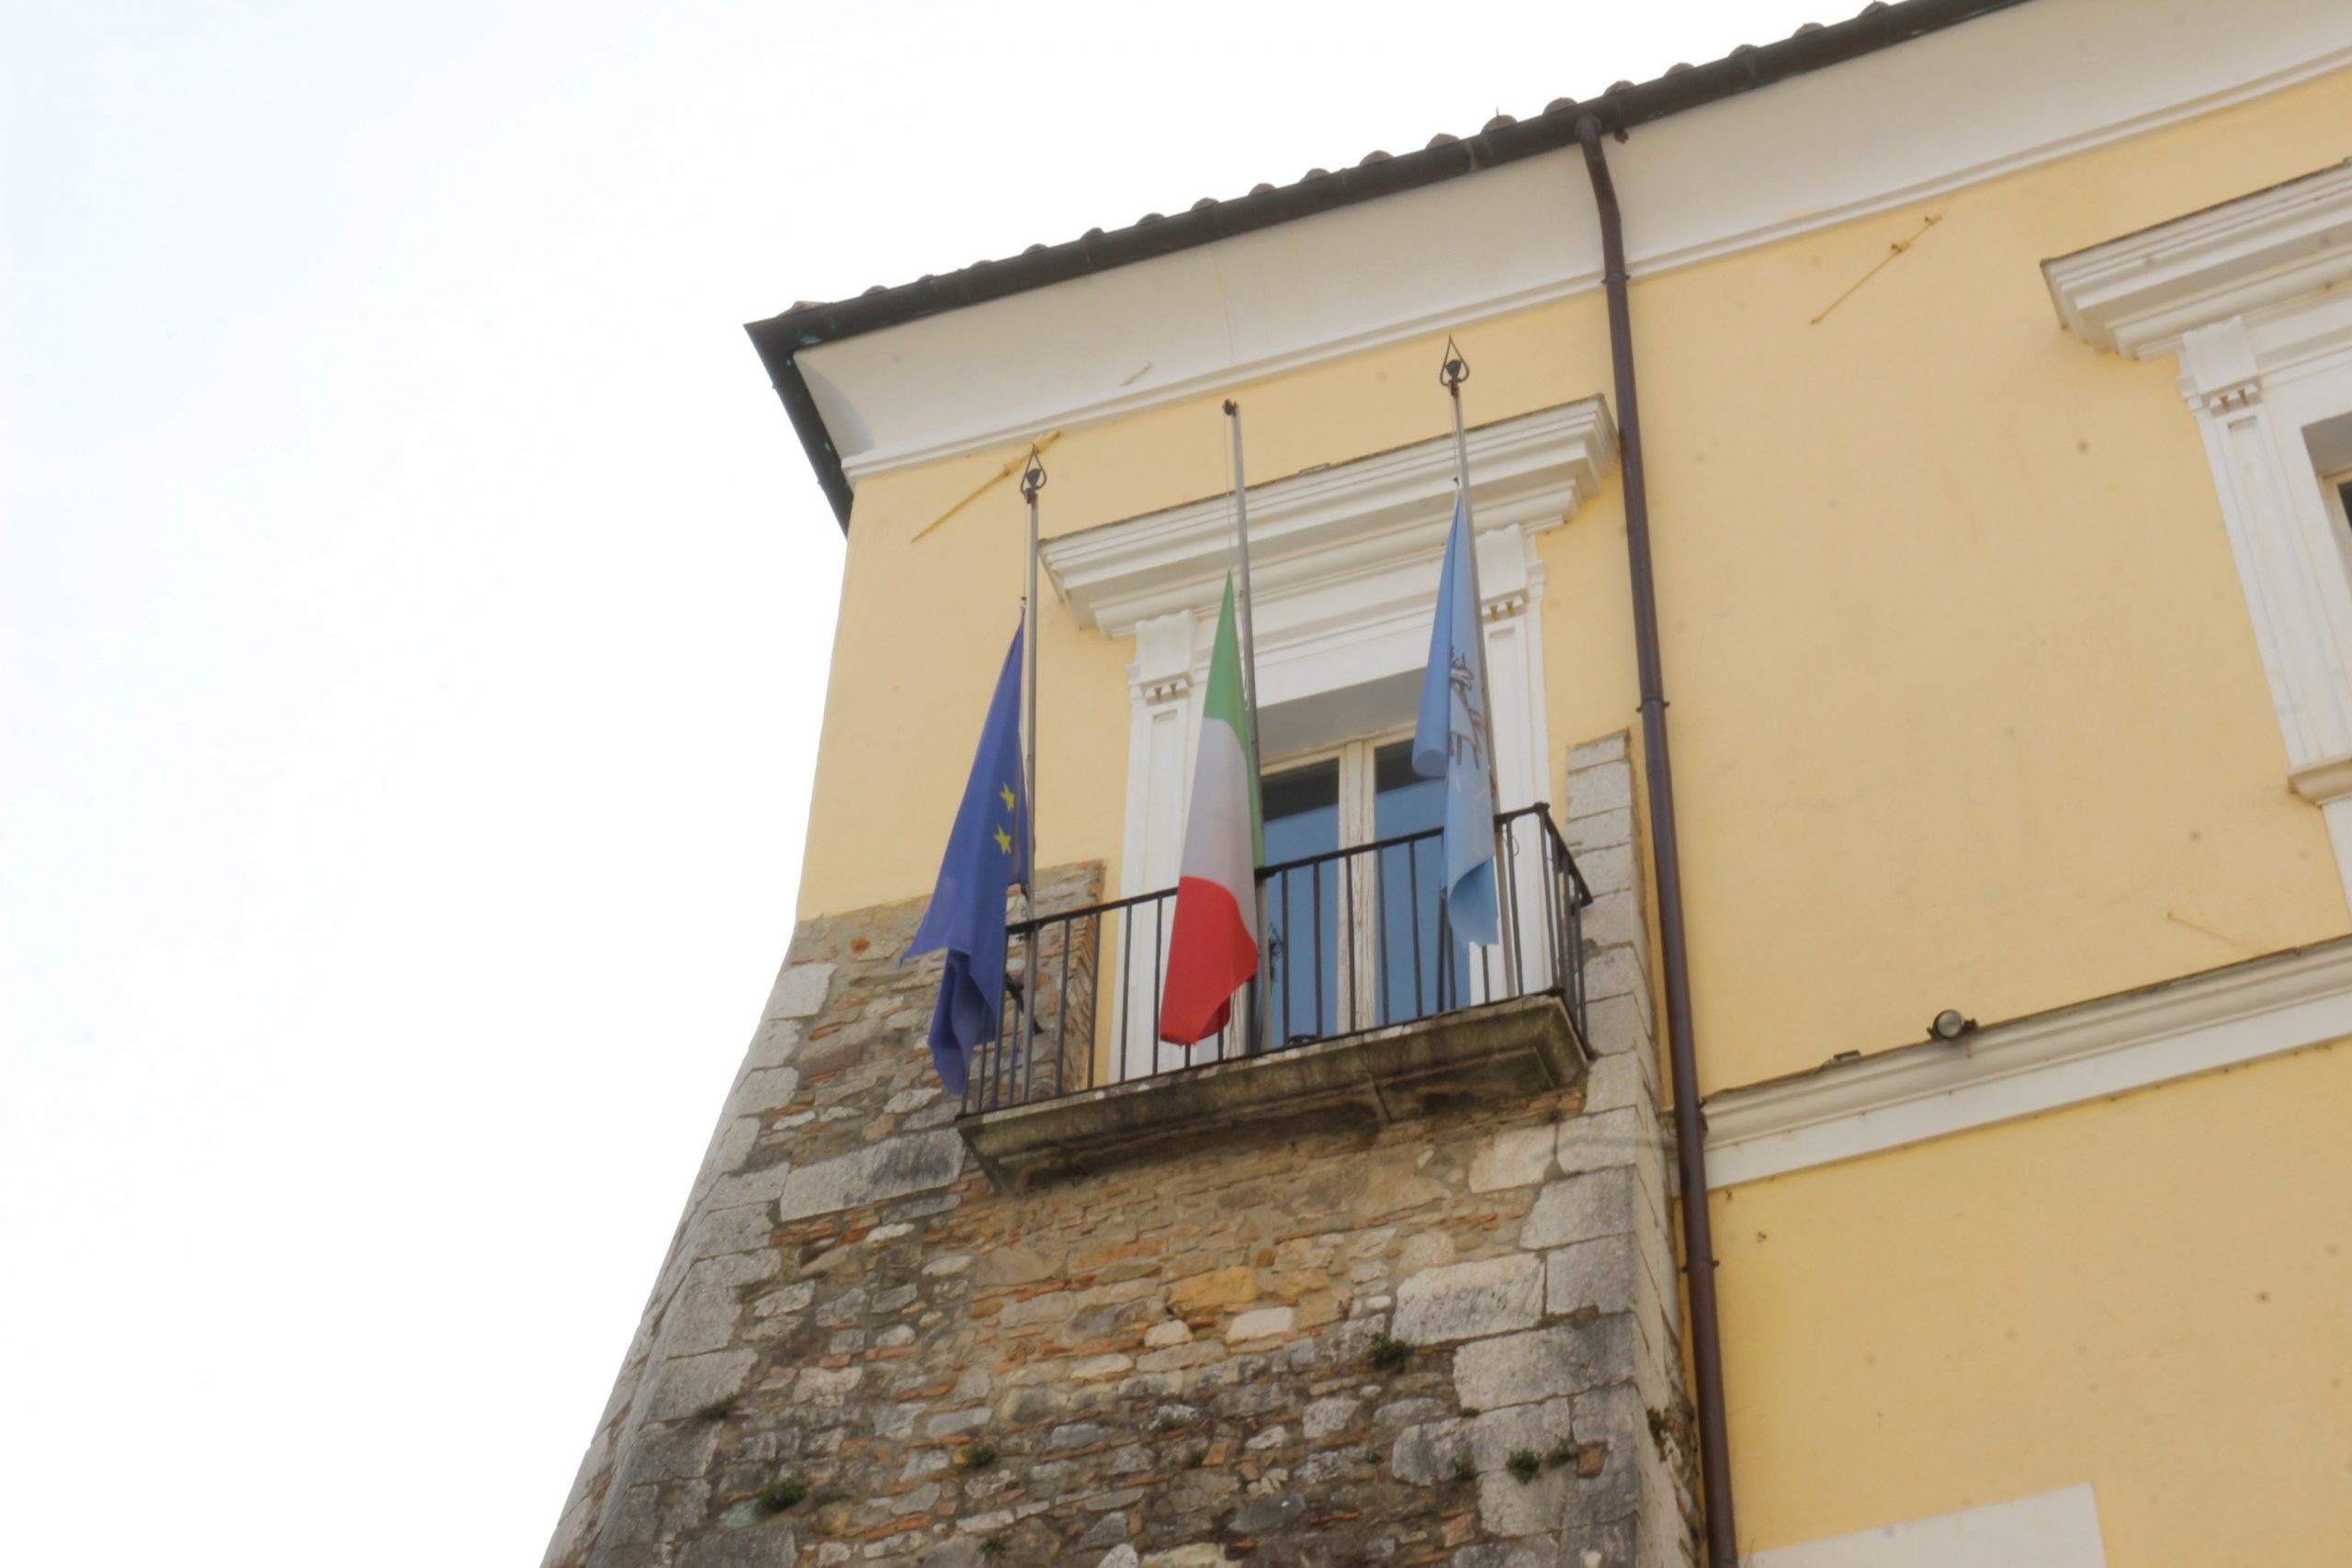 Benevento| Giornata nazionale in memoria delle vittime del Covid-19, bandiere a mezz’asta alla Provincia